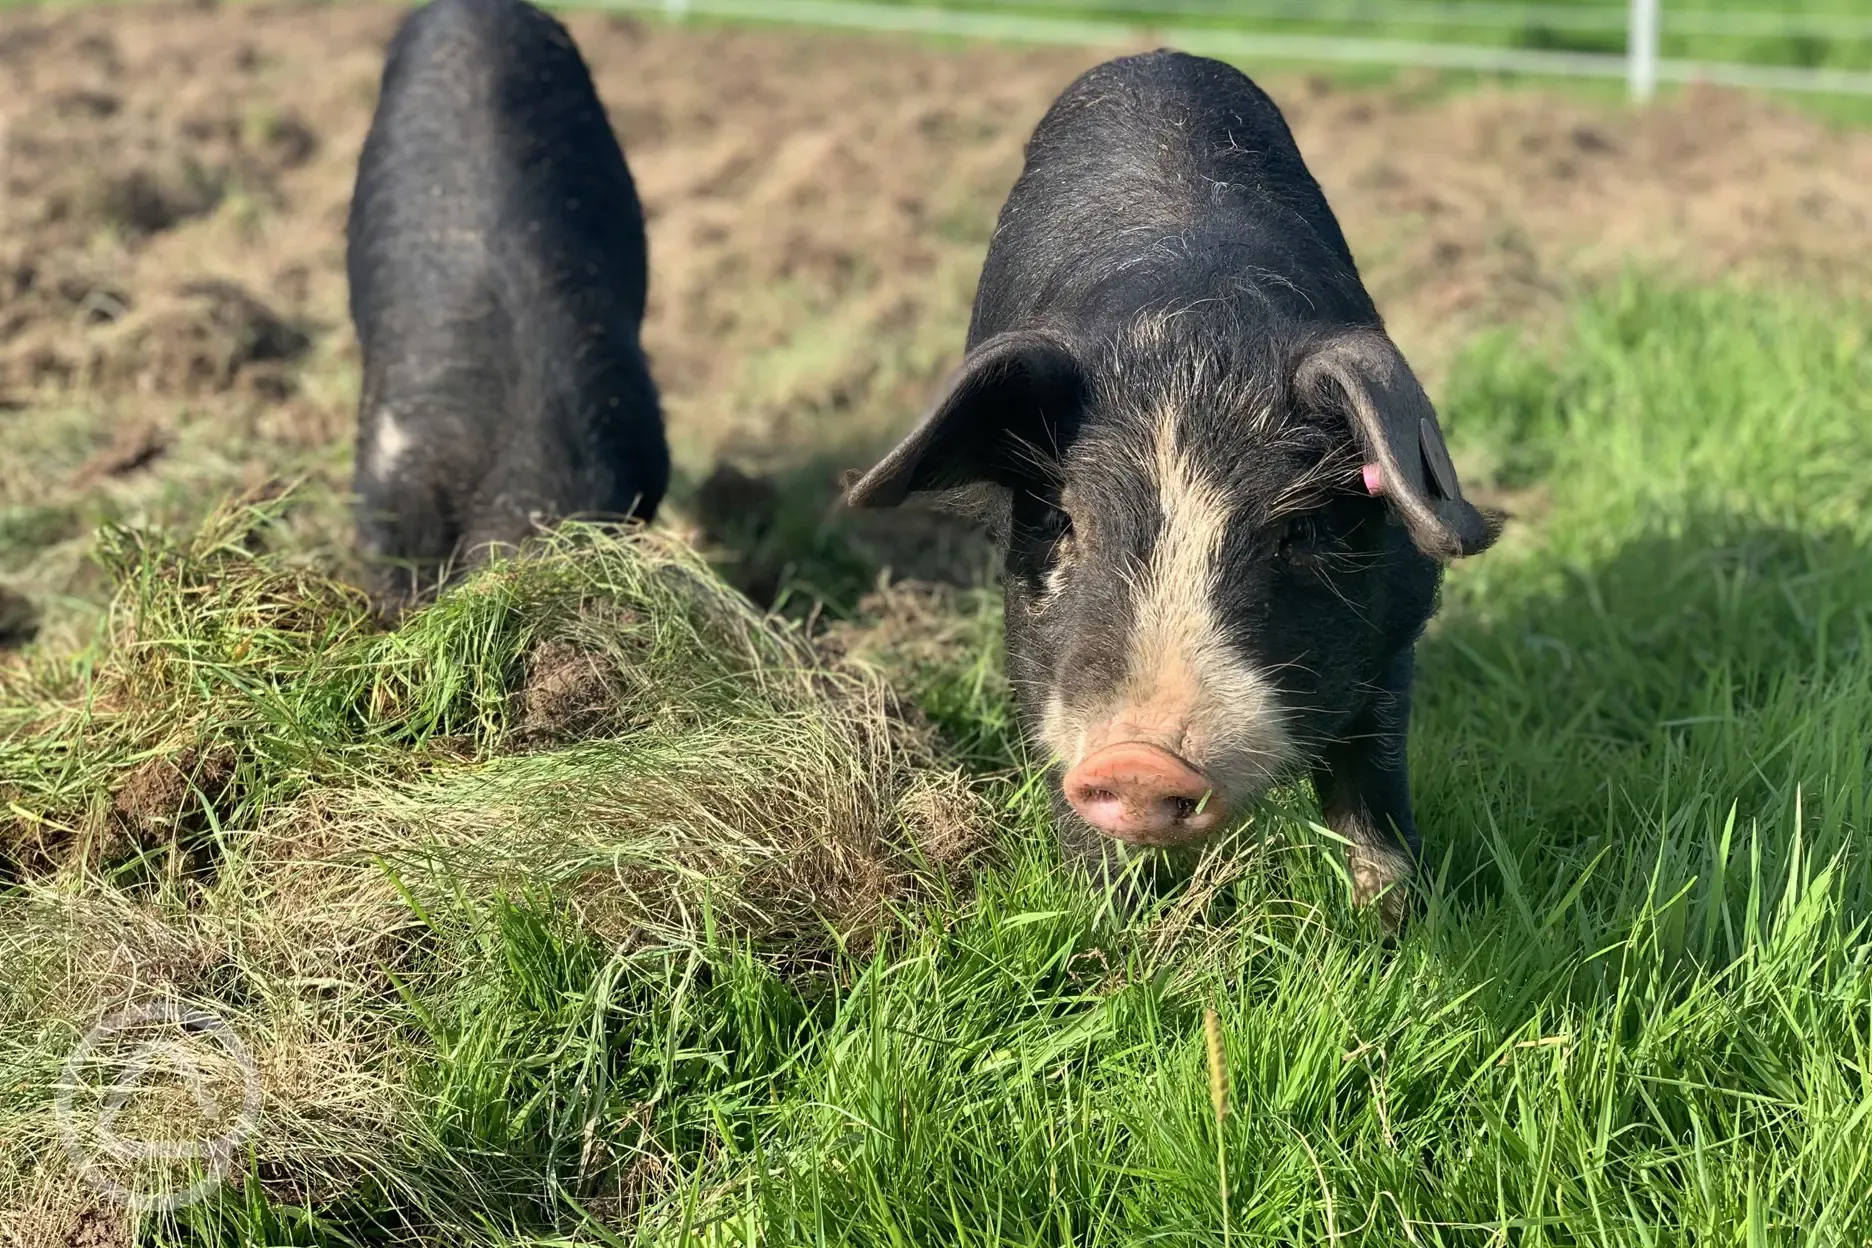 Meet the pigs